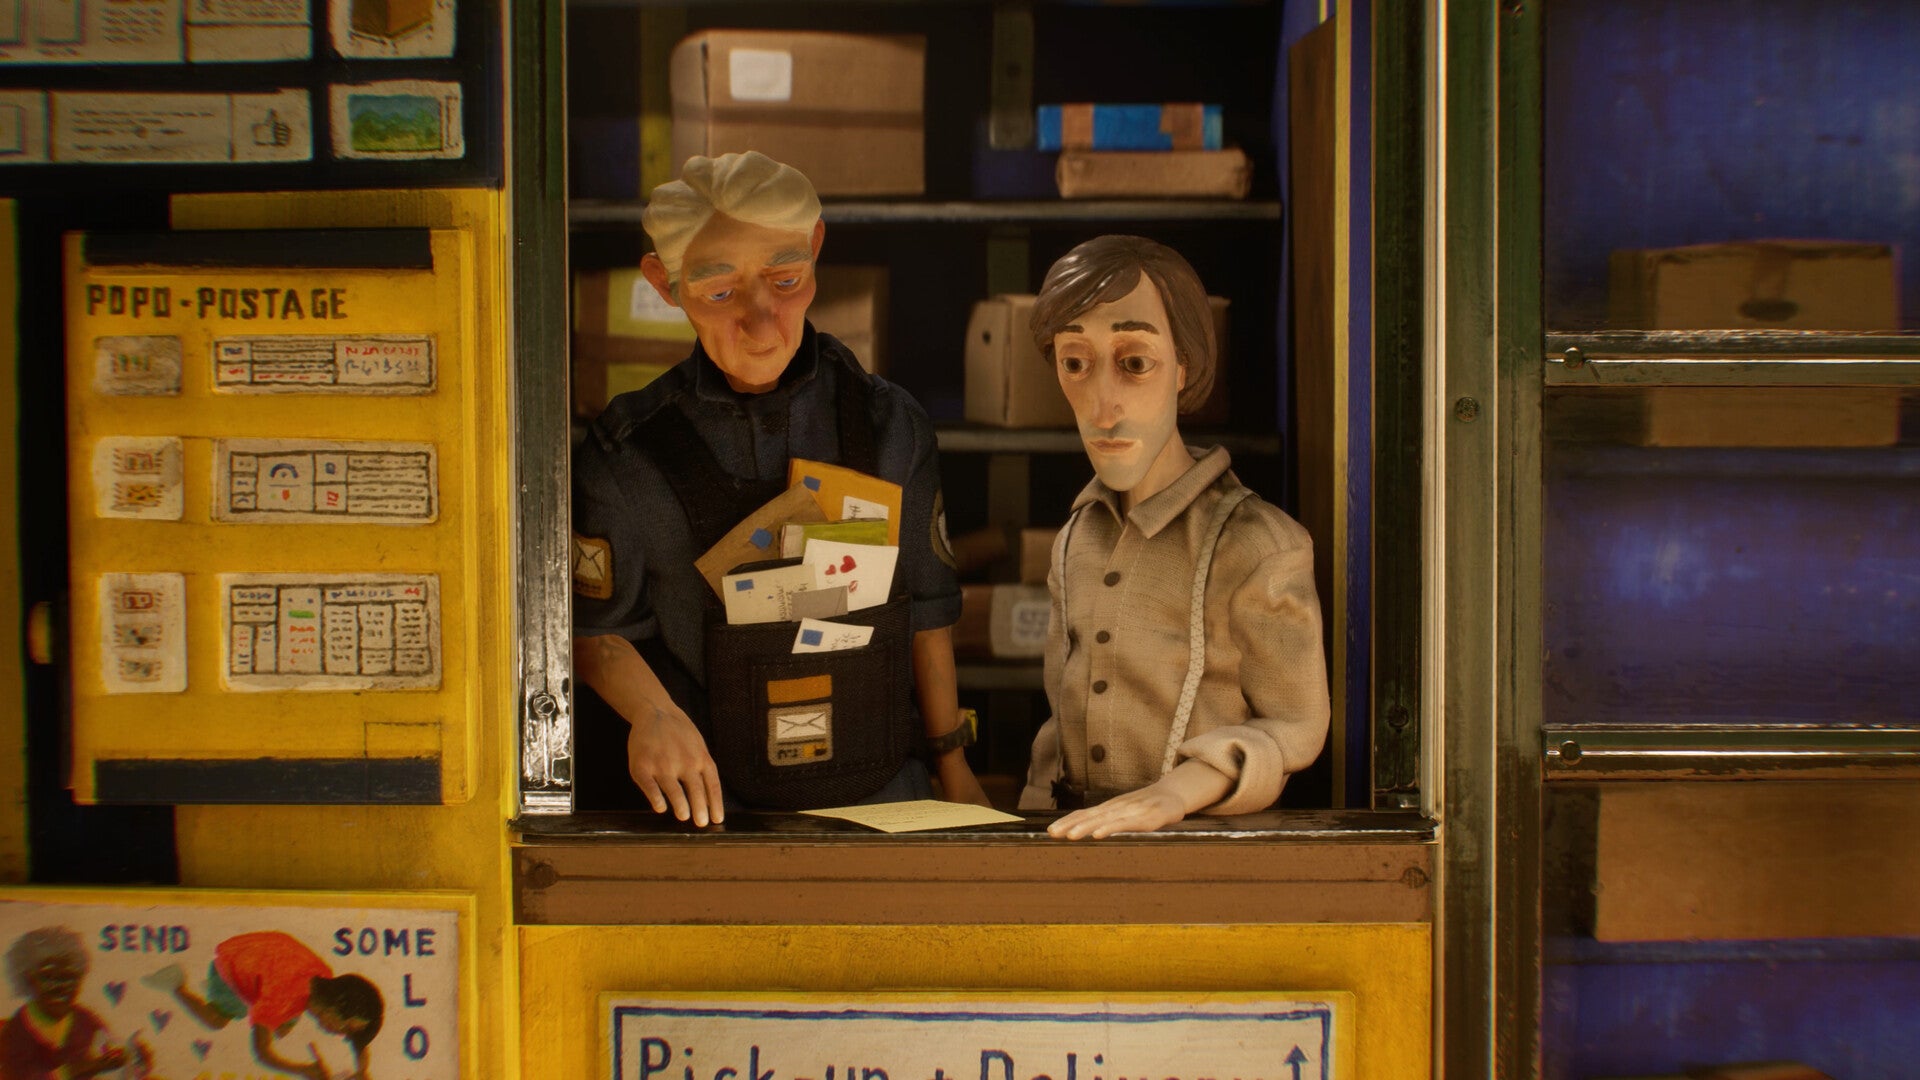 Due modelli stop-motion di uomini si trovano dietro la finestra di un ufficio postale. È tutto fatto a mano, con scritte improvvisate e tante lettere che danno carattere al luogo.